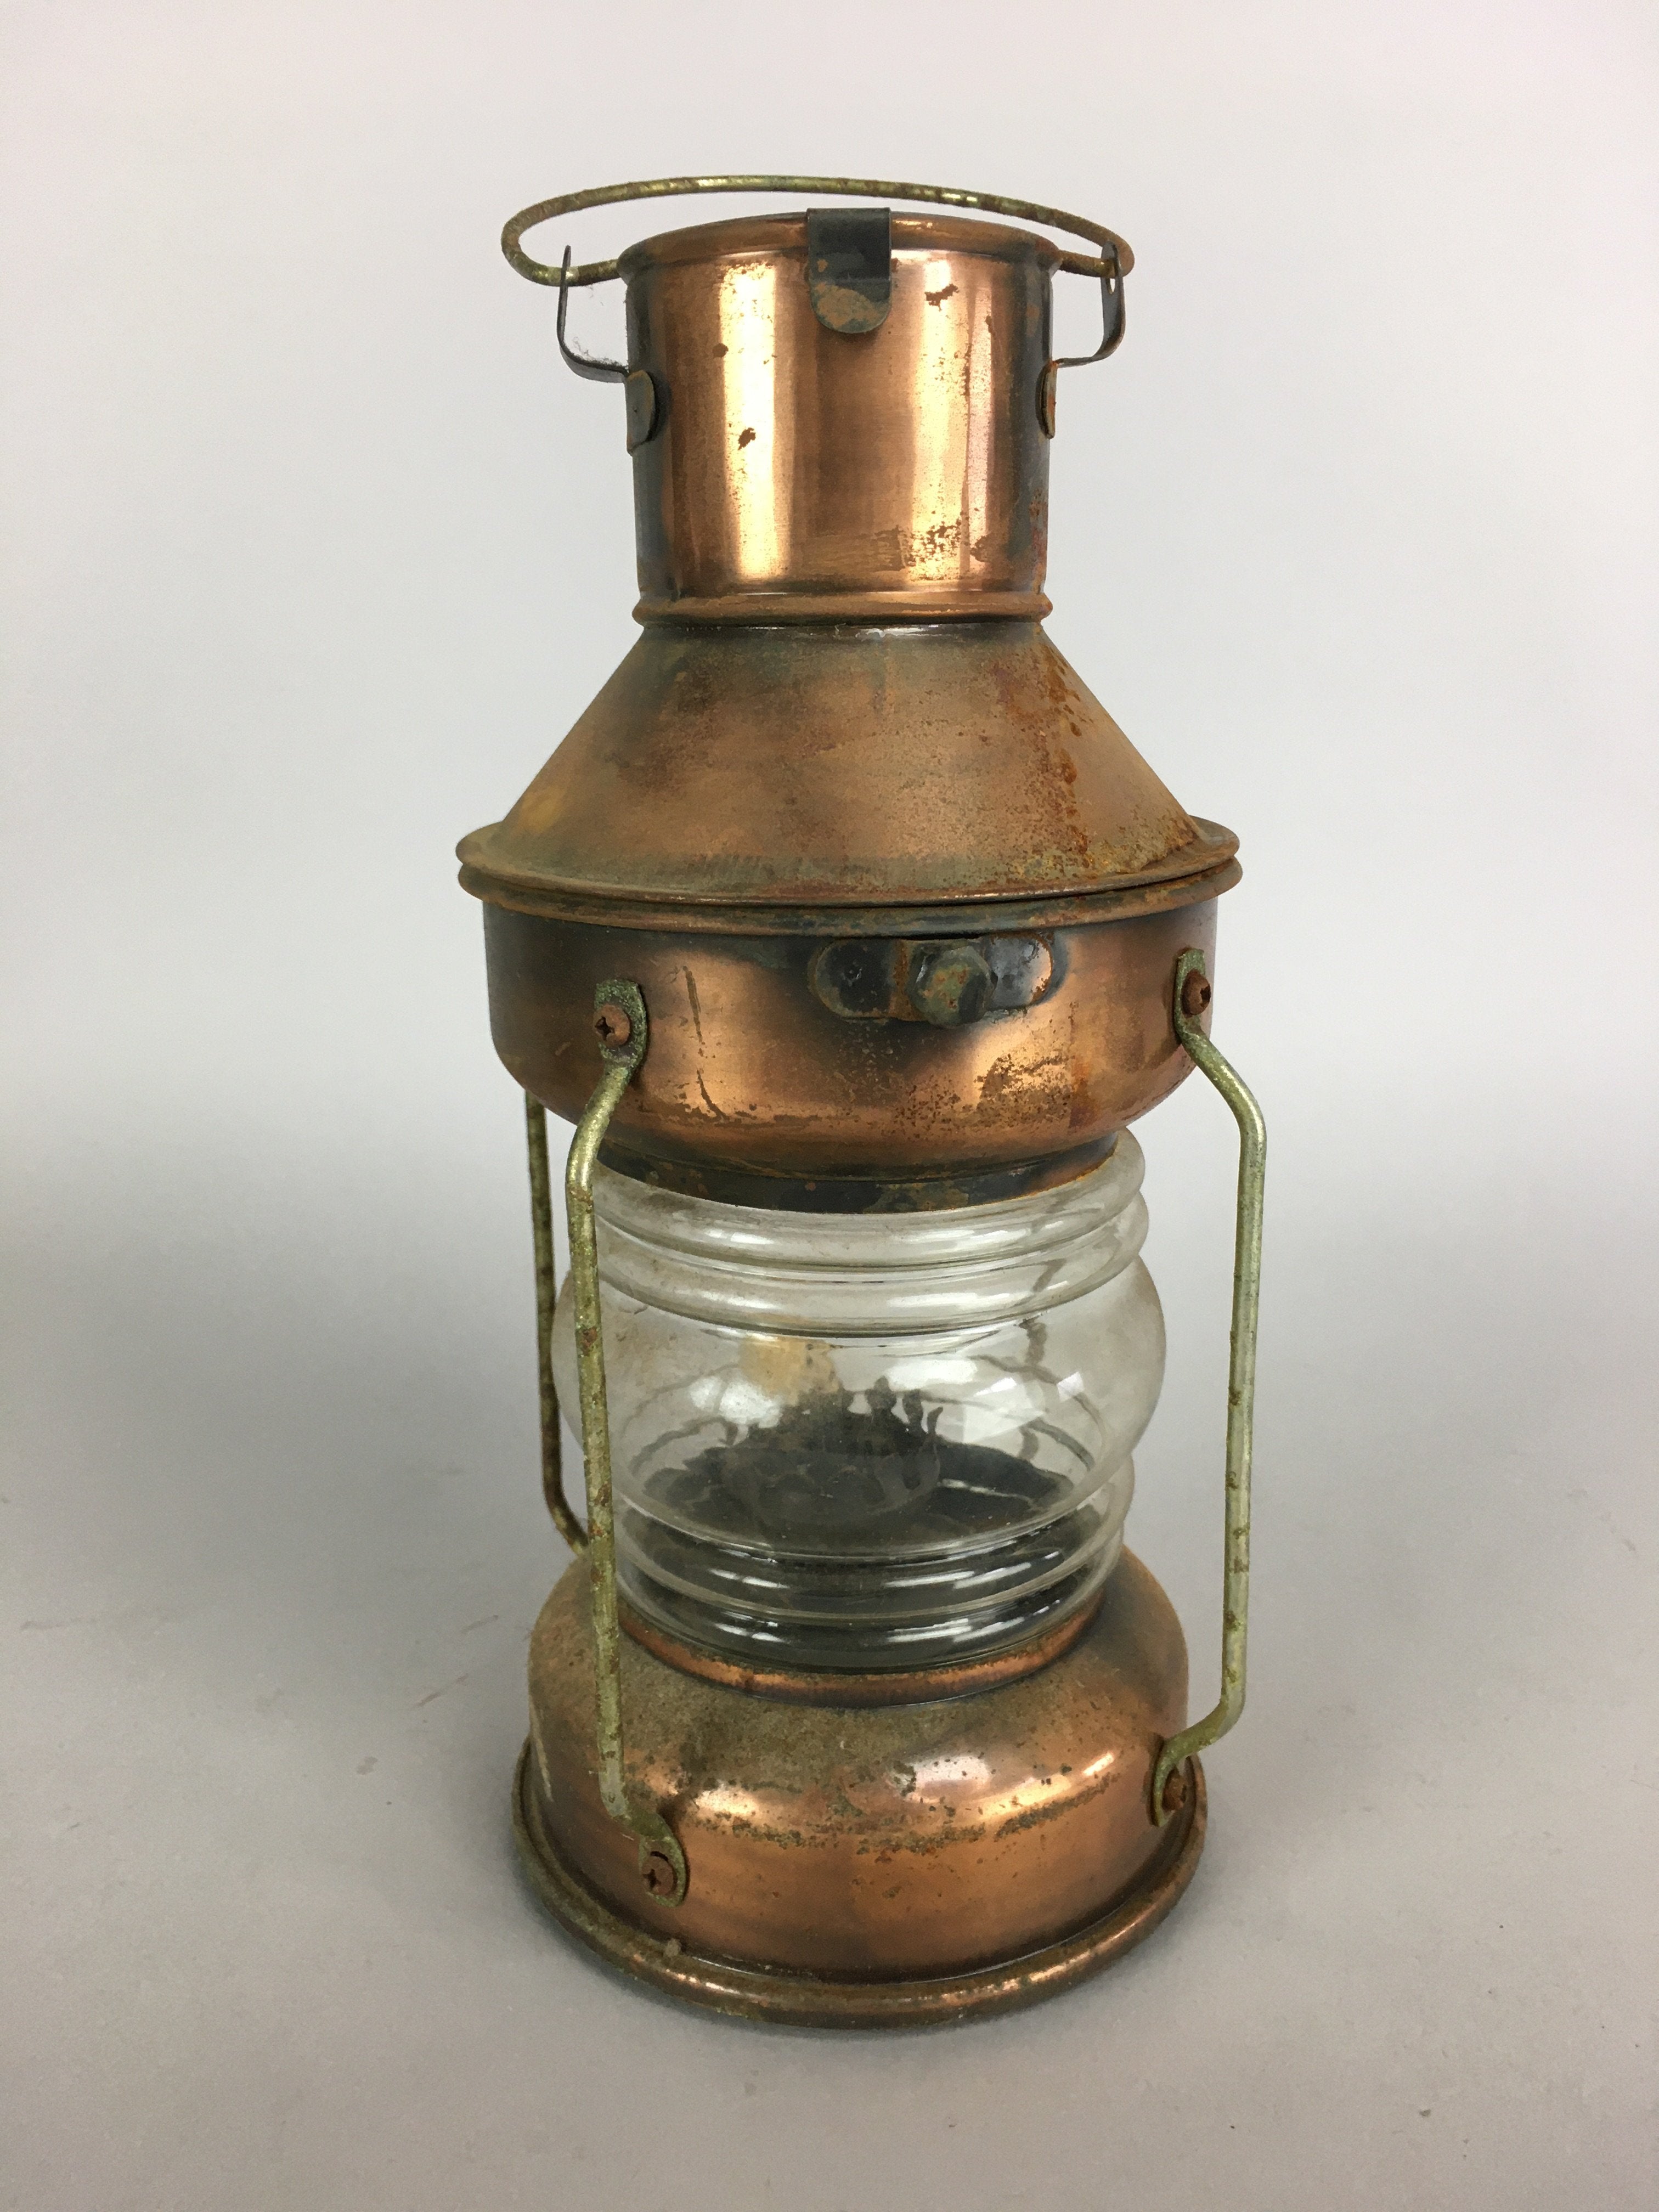 Japanese Copper Oil Lantern Vtg Hanging Oil Lamp Outdoor Ornament JK193